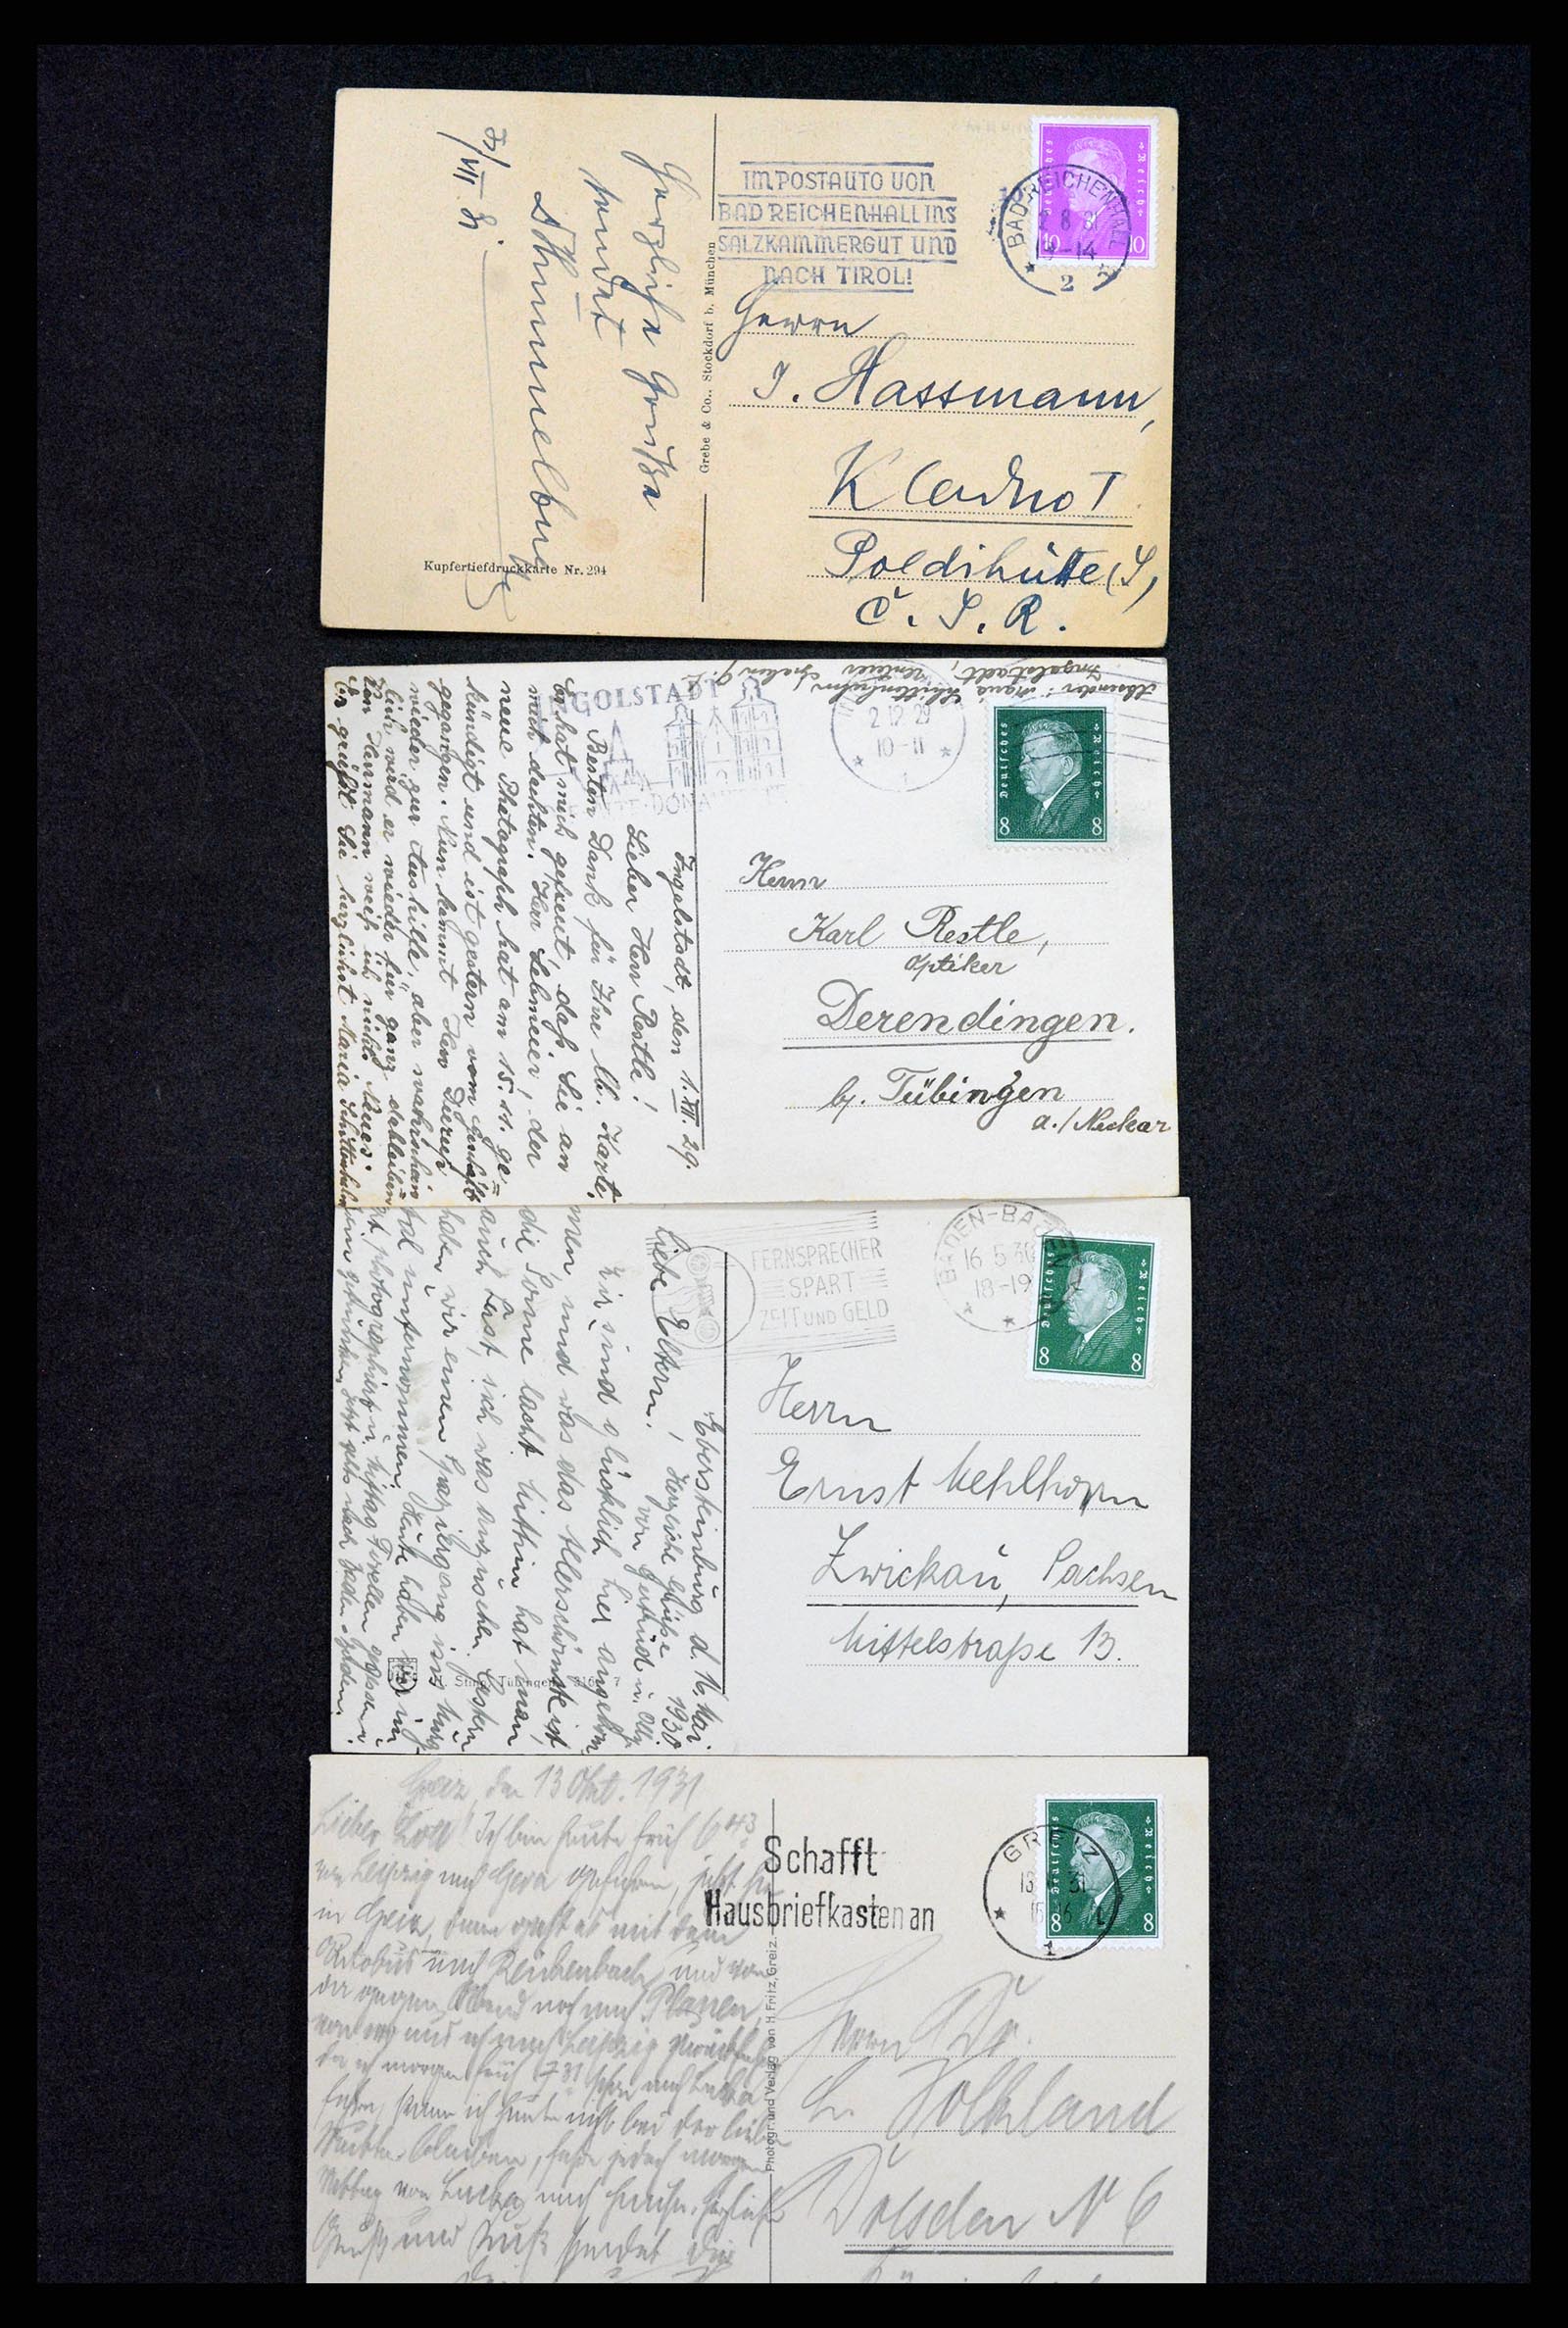 37246 015 - Postzegelverzameling 37246 Duitsland brieven 1900-1950.